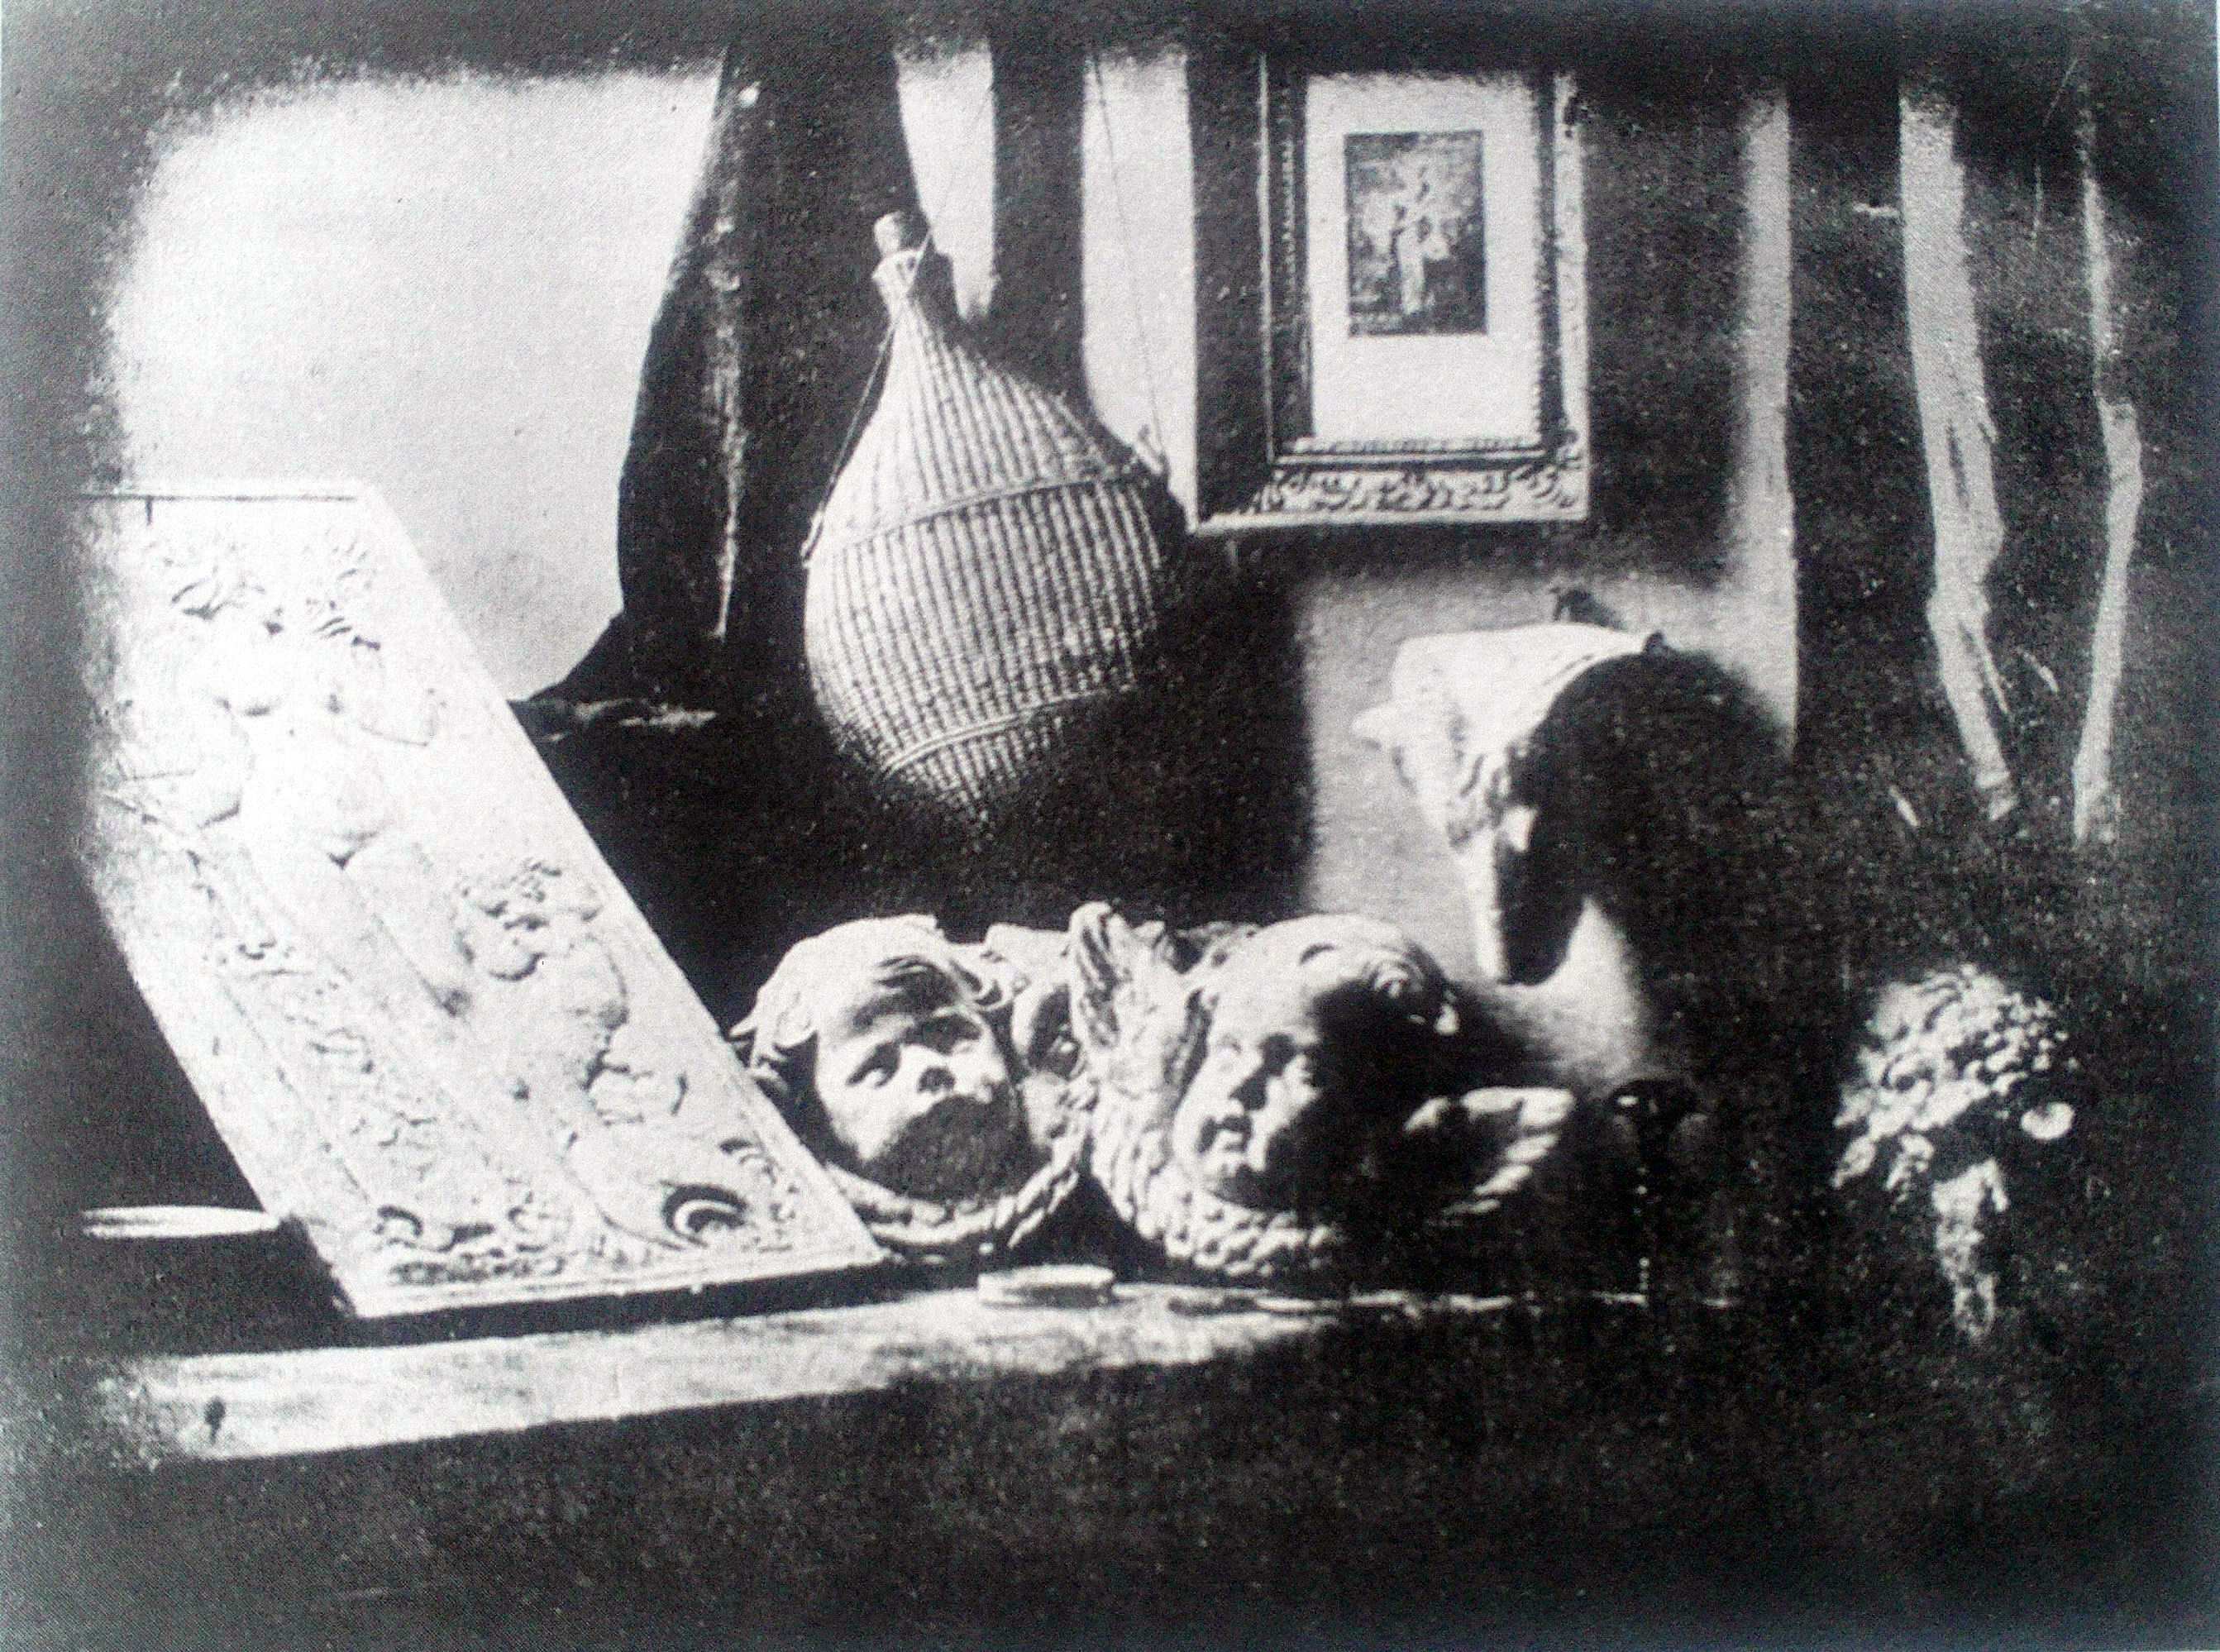 Τίτλος: Νεκρή φύση στο στούντιο Καλλιτέχνης: Νταγκέρ Χρονολογία: 1837 Υλικό: Φωτογραφική διαδικασία Περιγραφή: Αυτή είναι µία από τις πρώτες επιτυχηµένες πλάκες και αφού ο Νταγκέρ είχε τελειοποιήσει